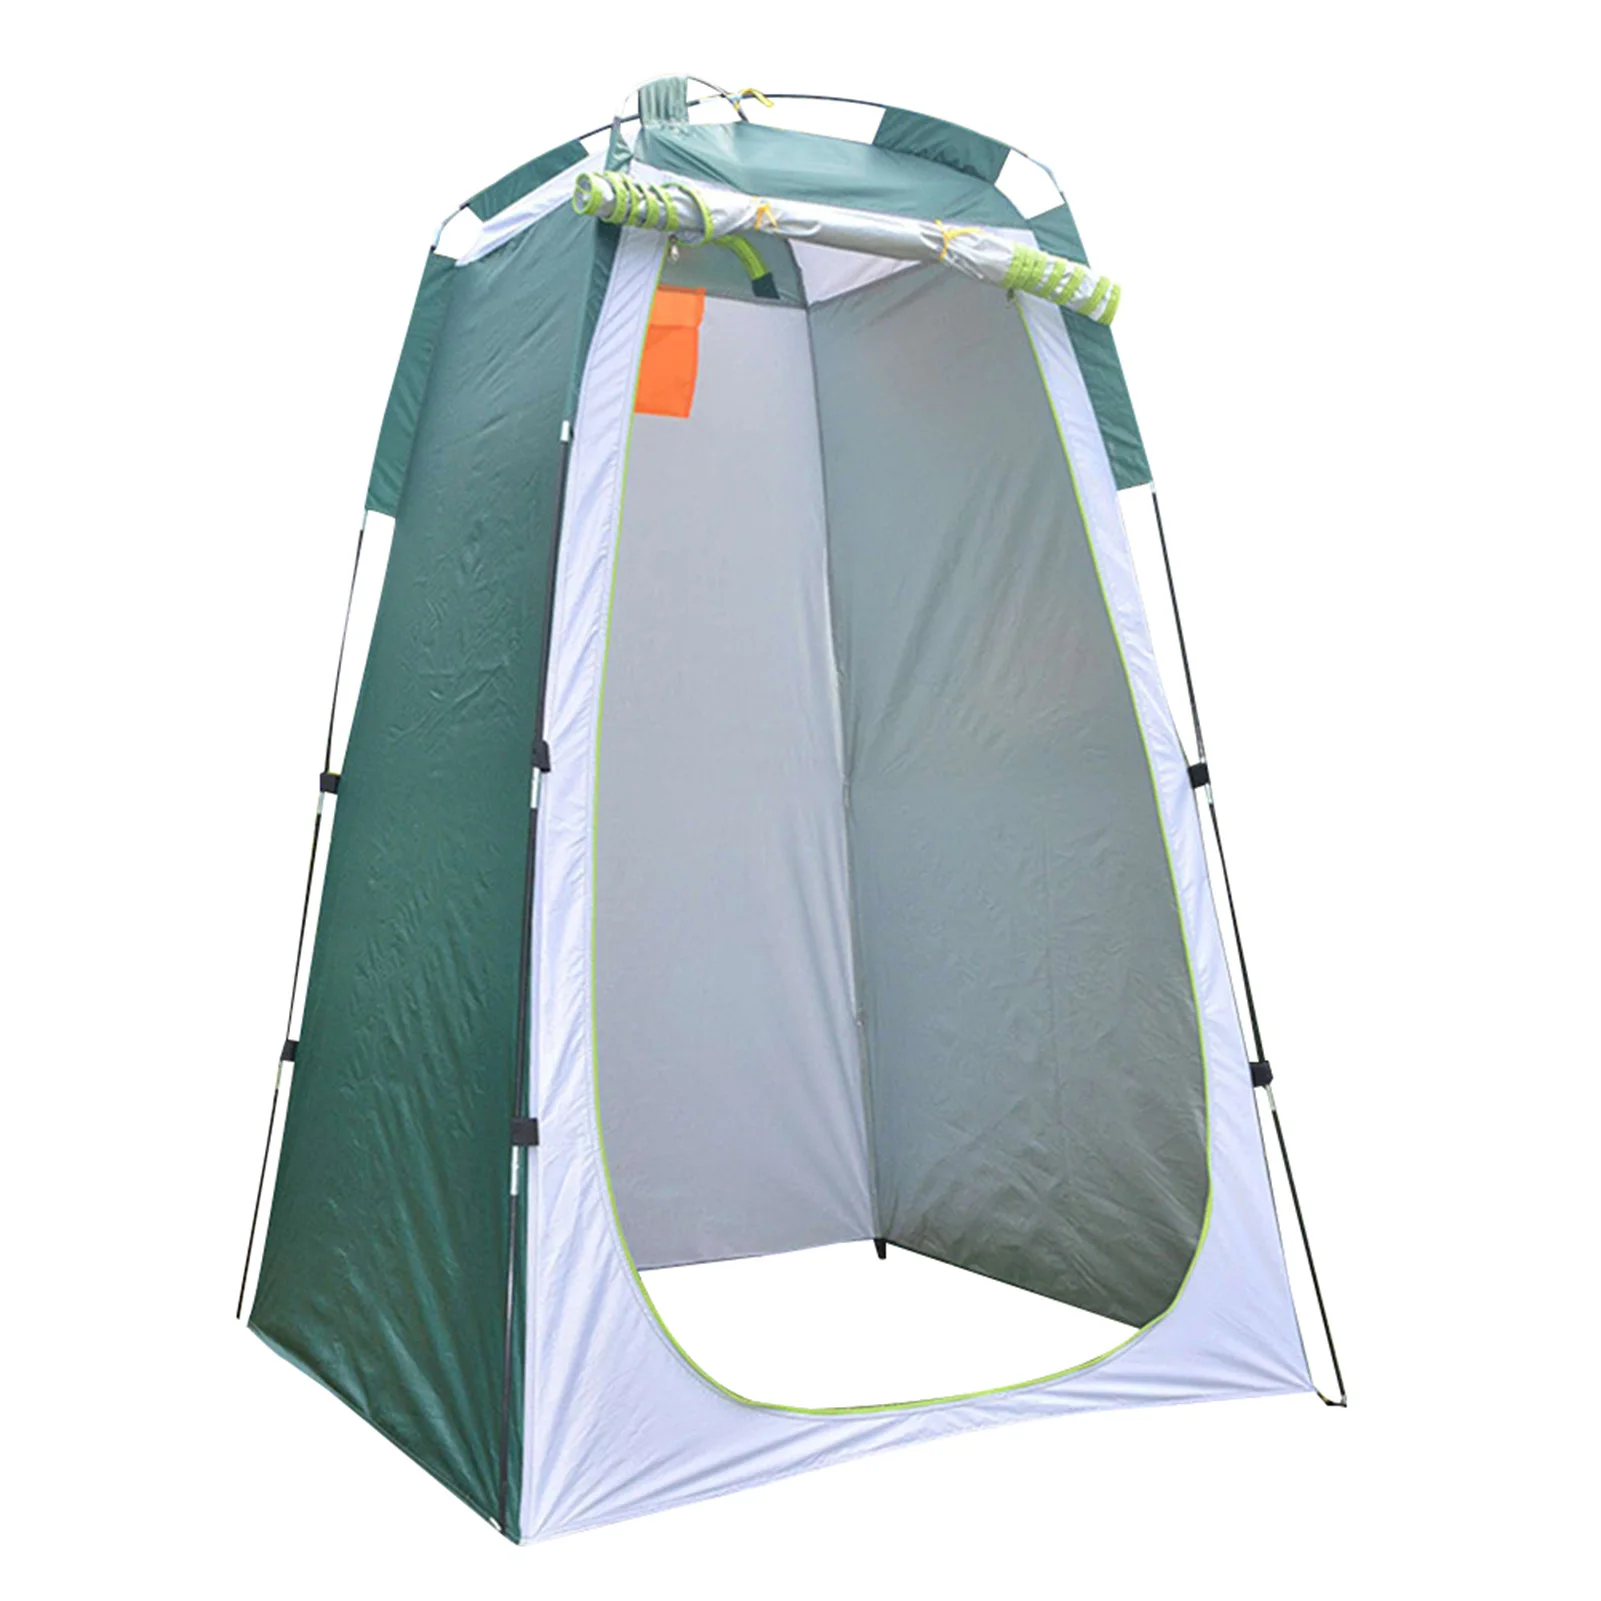 120*120*190 Cm Tenda da Campeggio per Doccia Tenda da Pioggia per Esterni con 3 Finestre per Campeggio Escursionismo Escursionismo Spiaggia AllAperto Tenda per La Privacy Portatile 